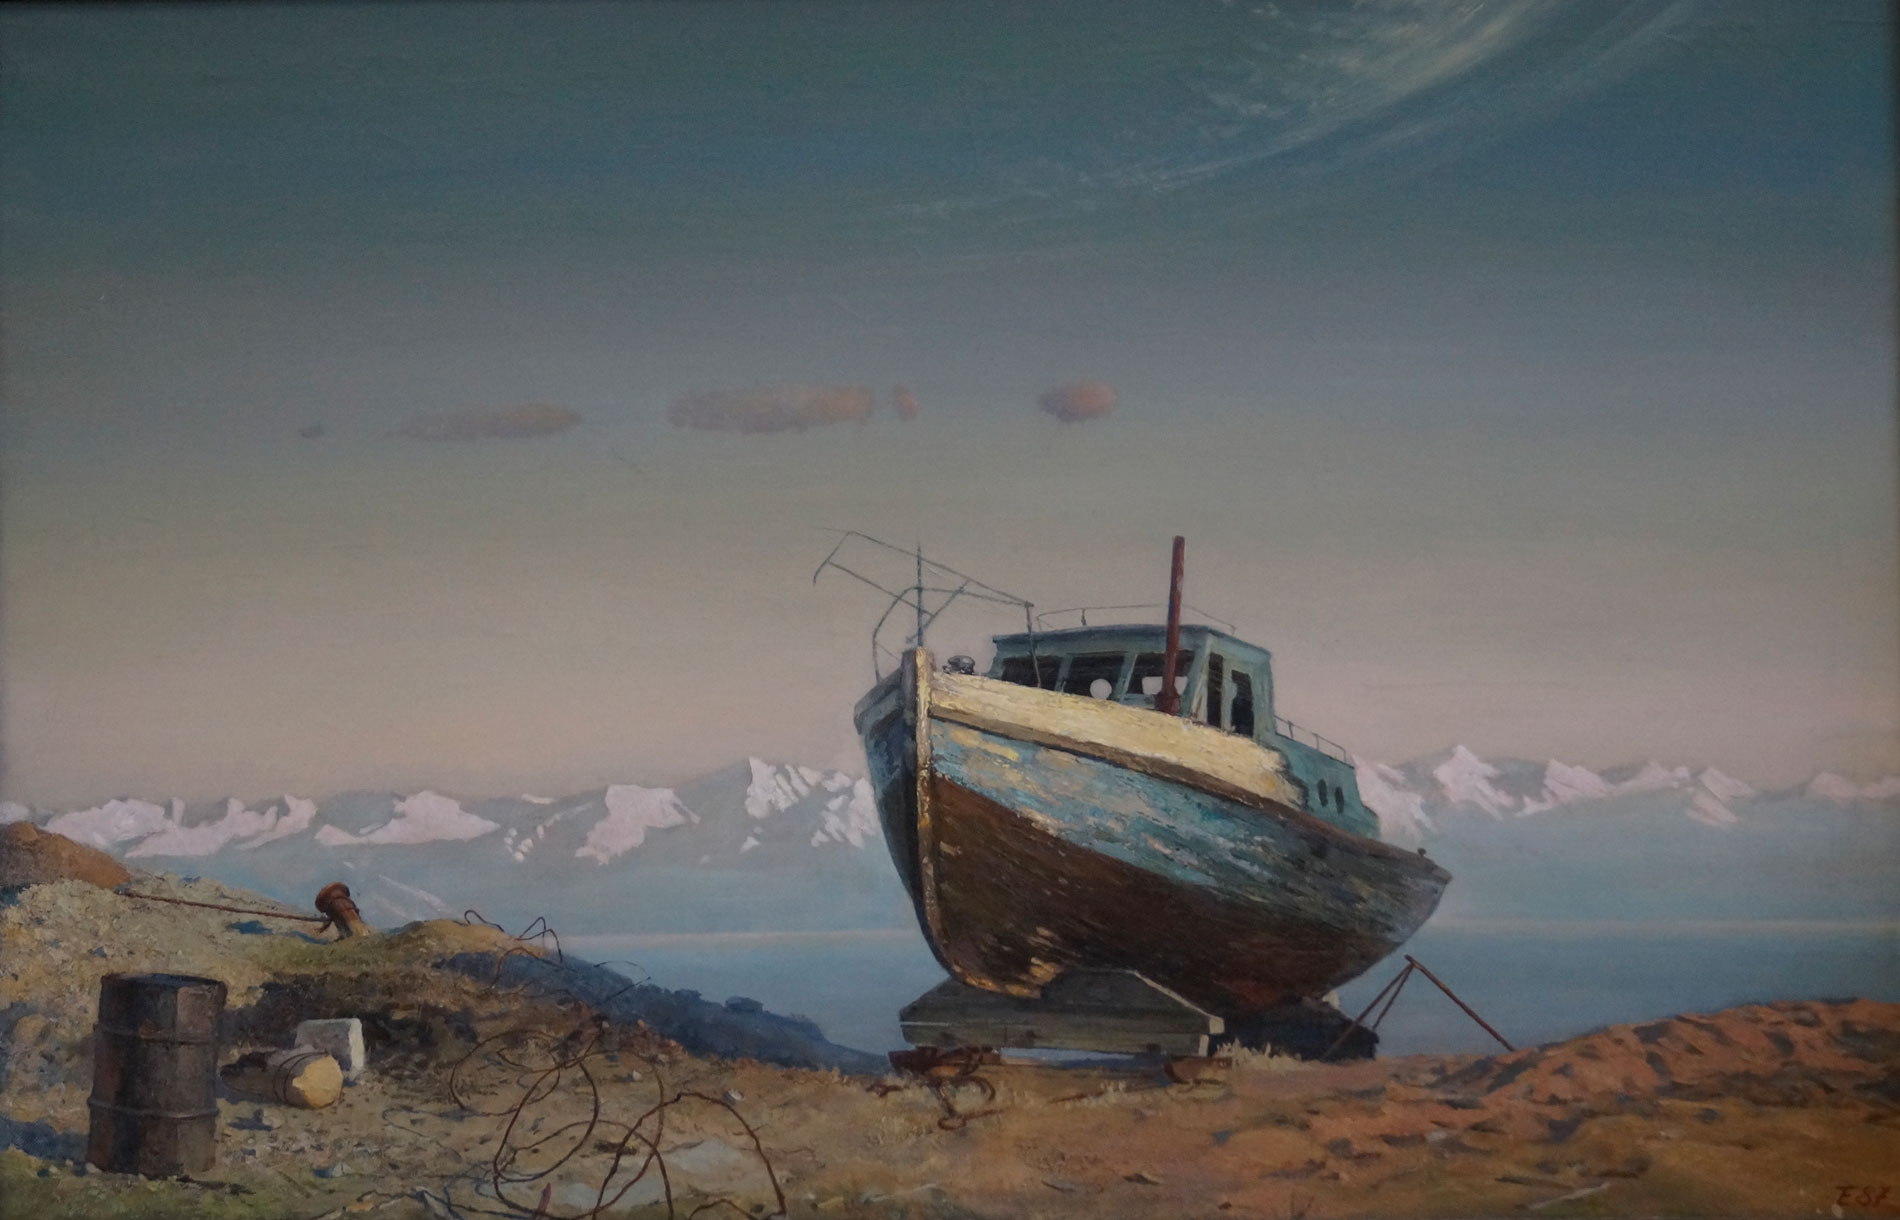 Baikal Shores, Evgeny Tonkikh, Buy the painting Oil